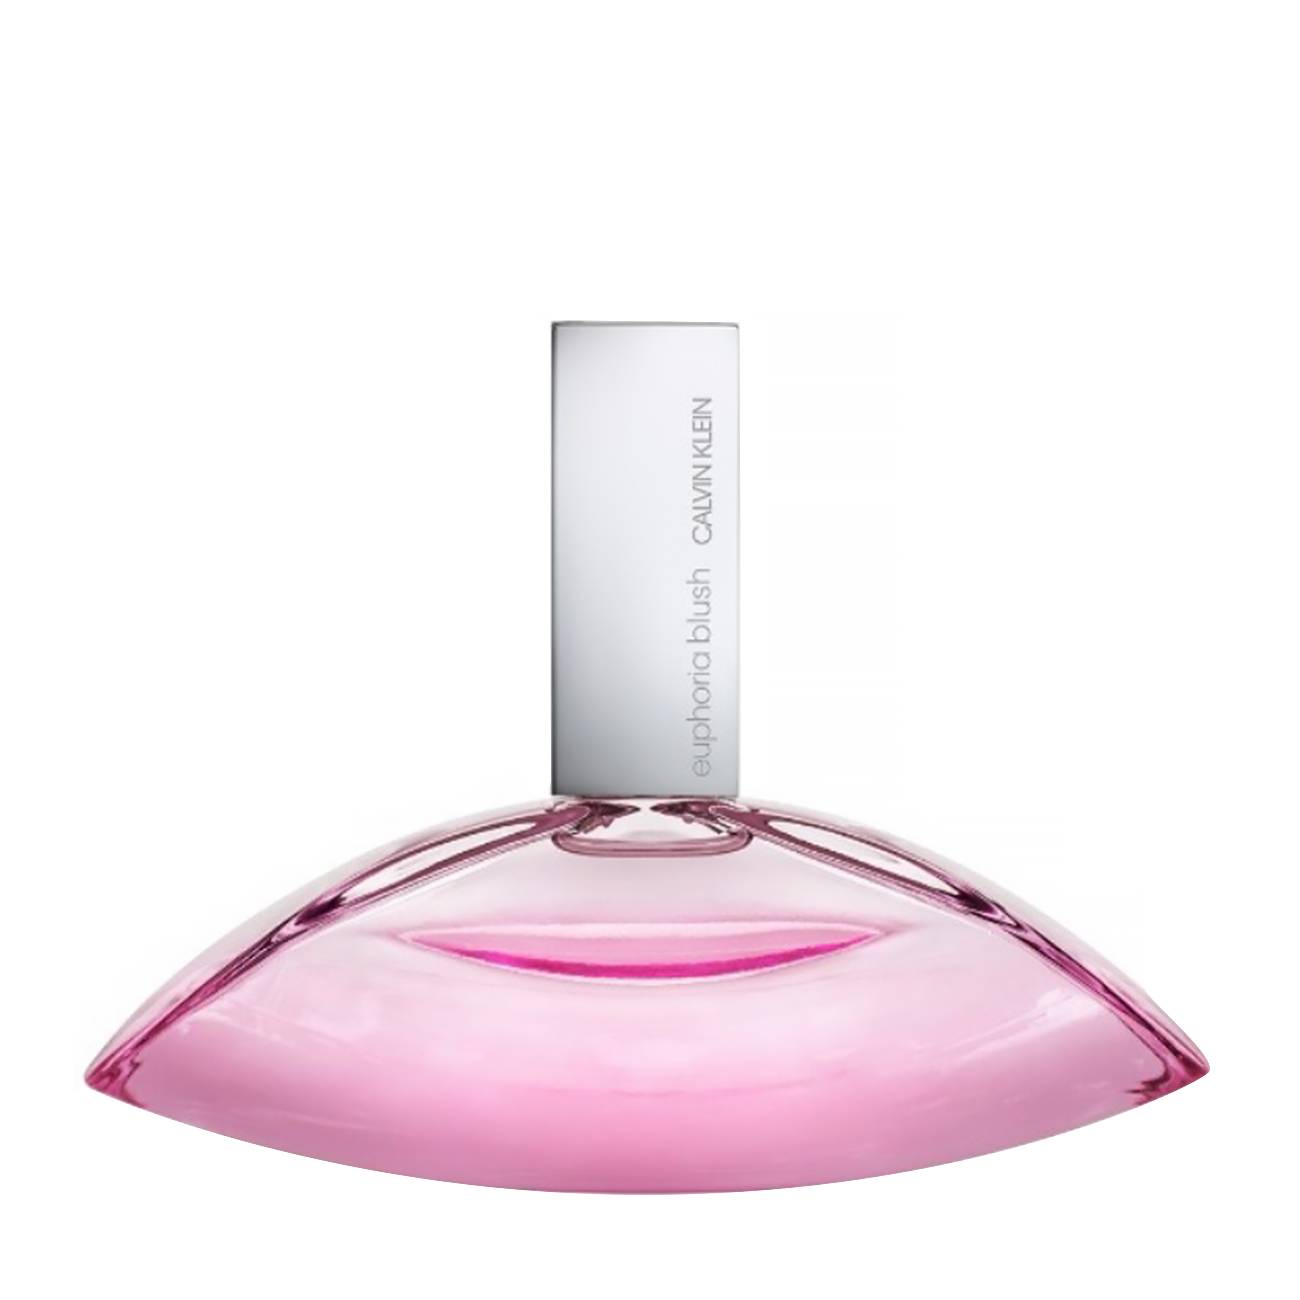 Apa de Parfum Calvin Klein EUPHORIA BLUSH 100ml cu comanda online